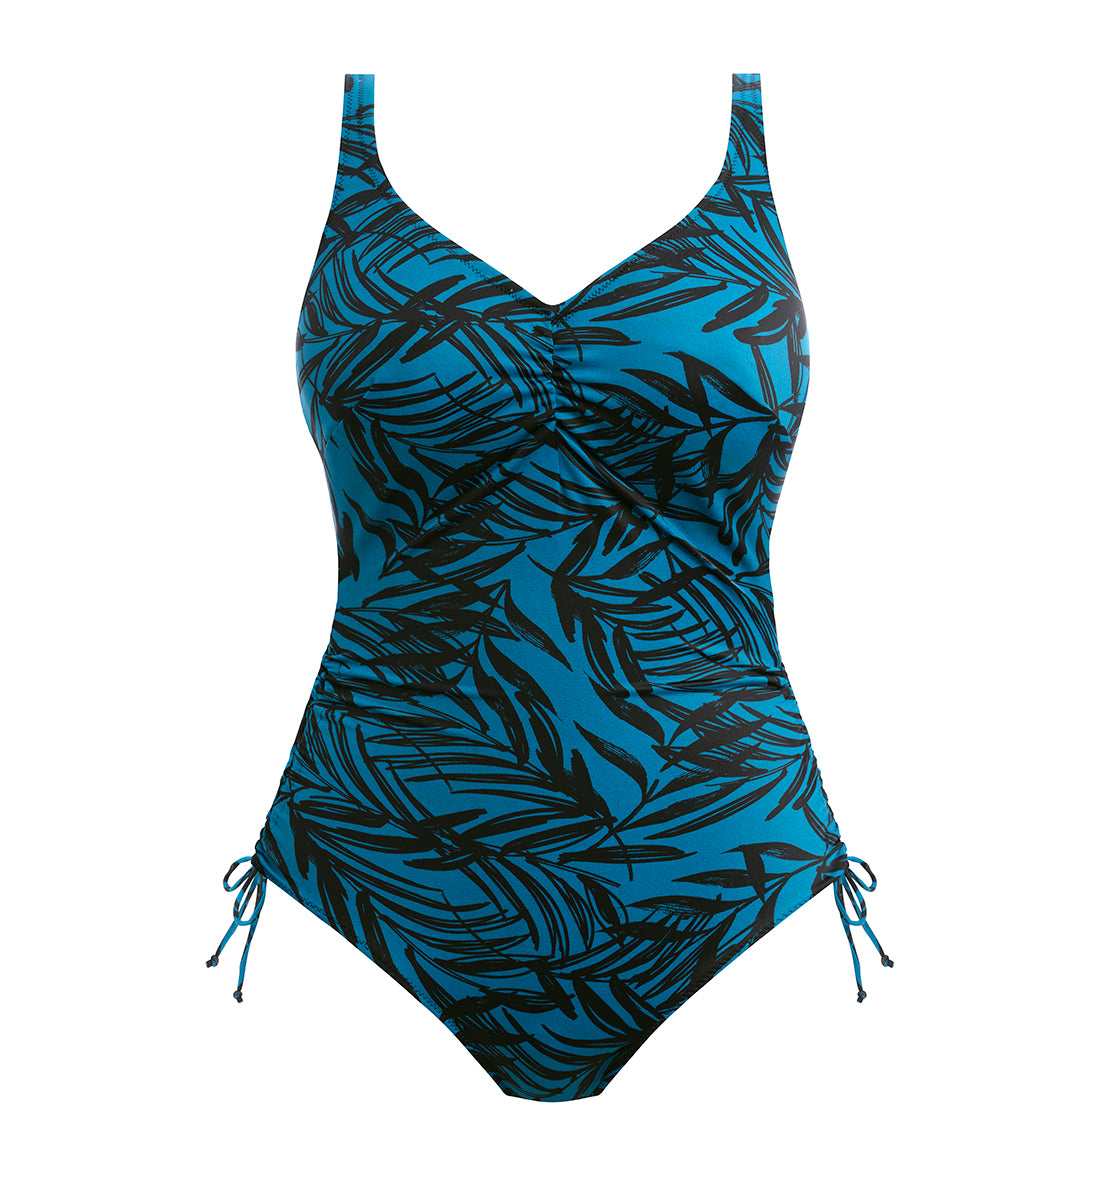 Fantasie Palmetto Bay V-Neck Underwire Adjustable Leg Swimsuit (502030),34F,Zen Blue - Zen Blue,34F